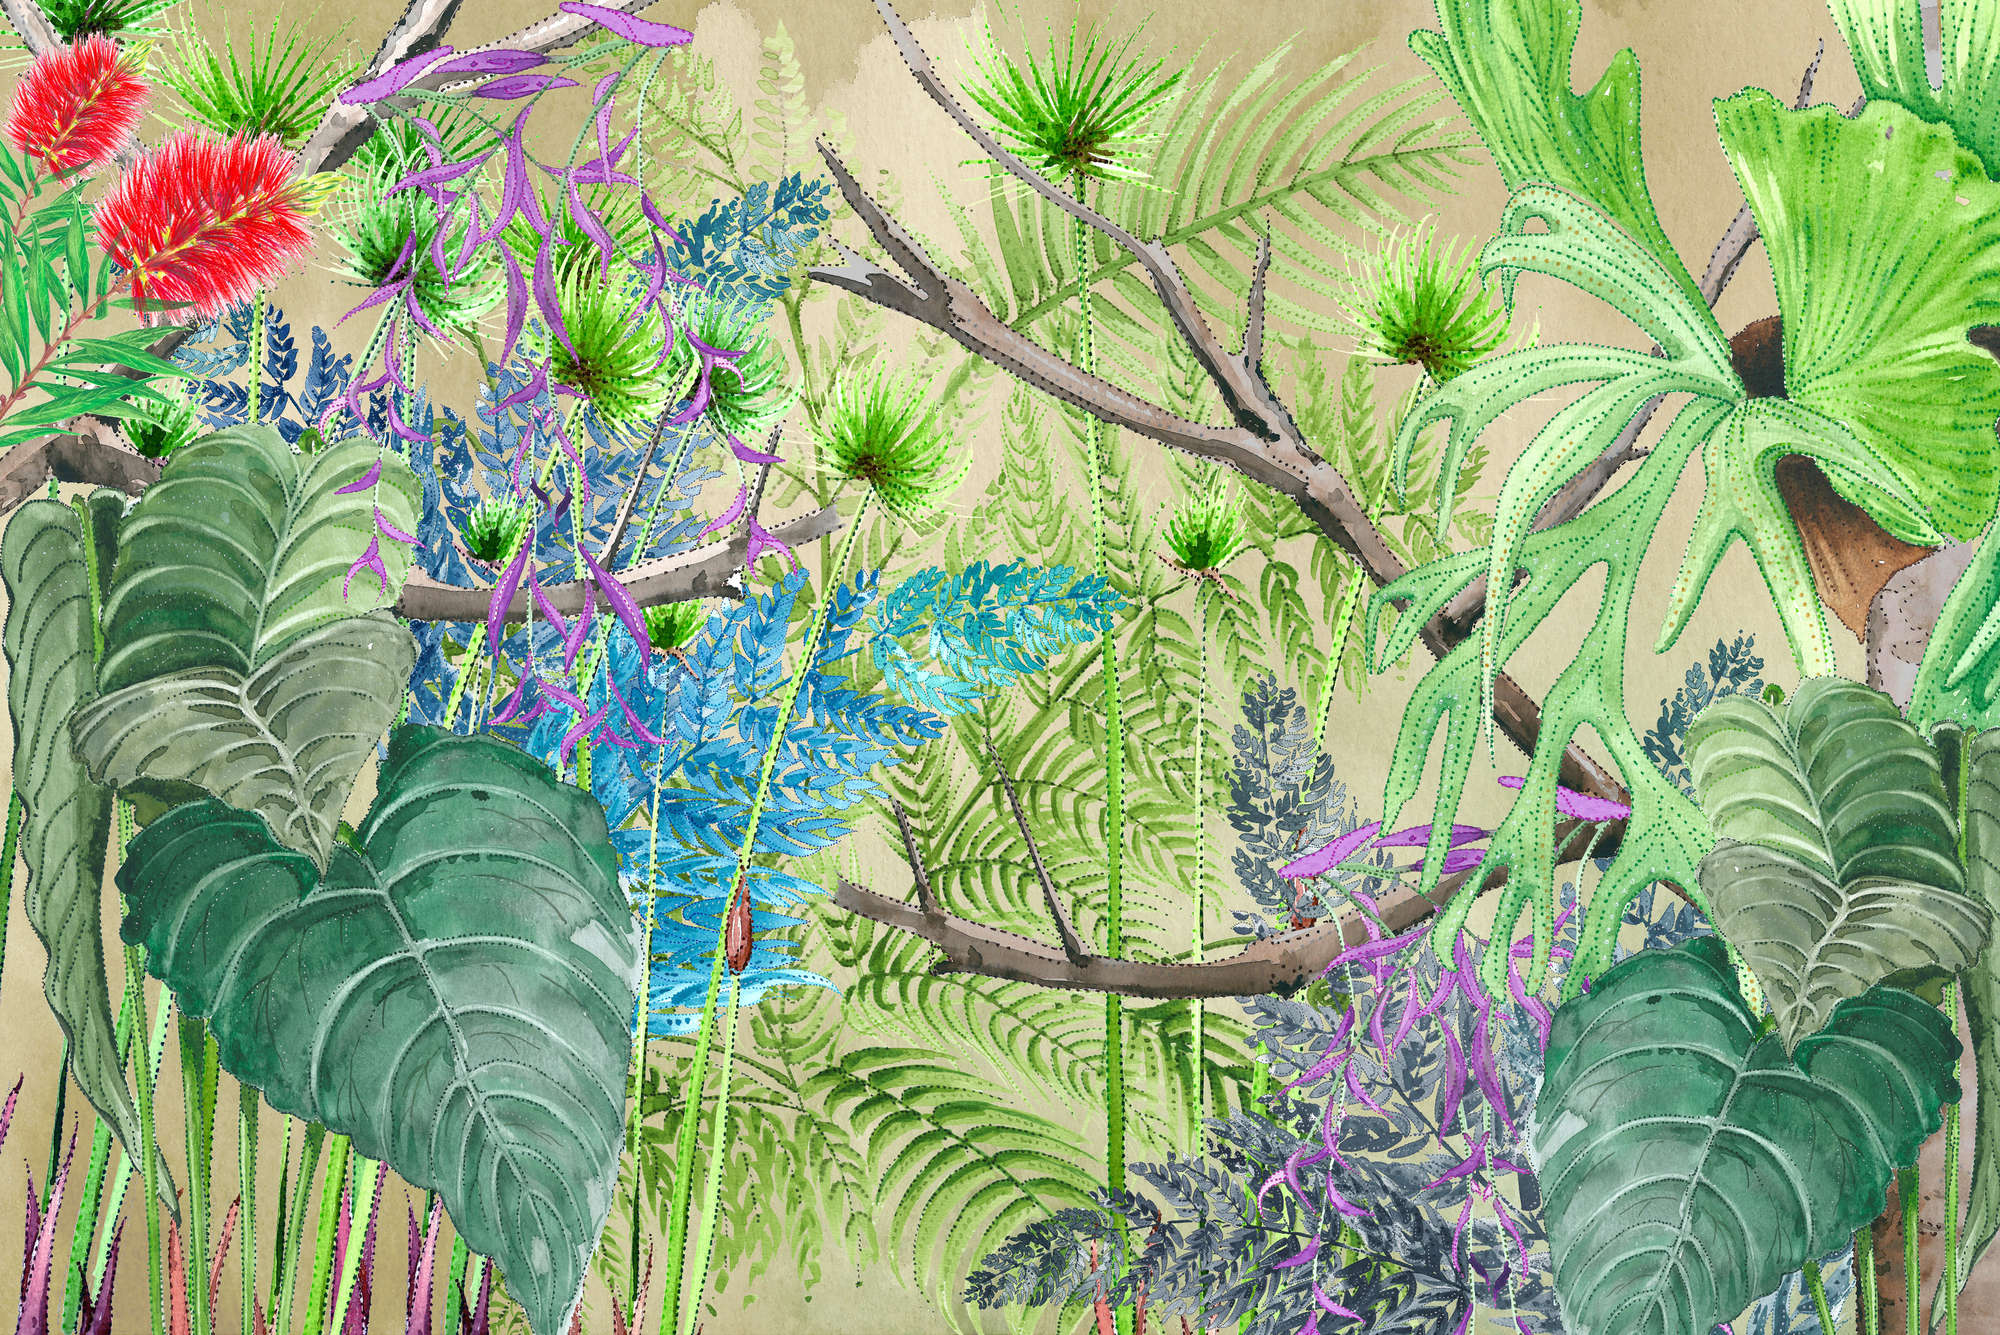             Fotomuralis della giungla con fiori blu e verdi su vinile testurizzato
        